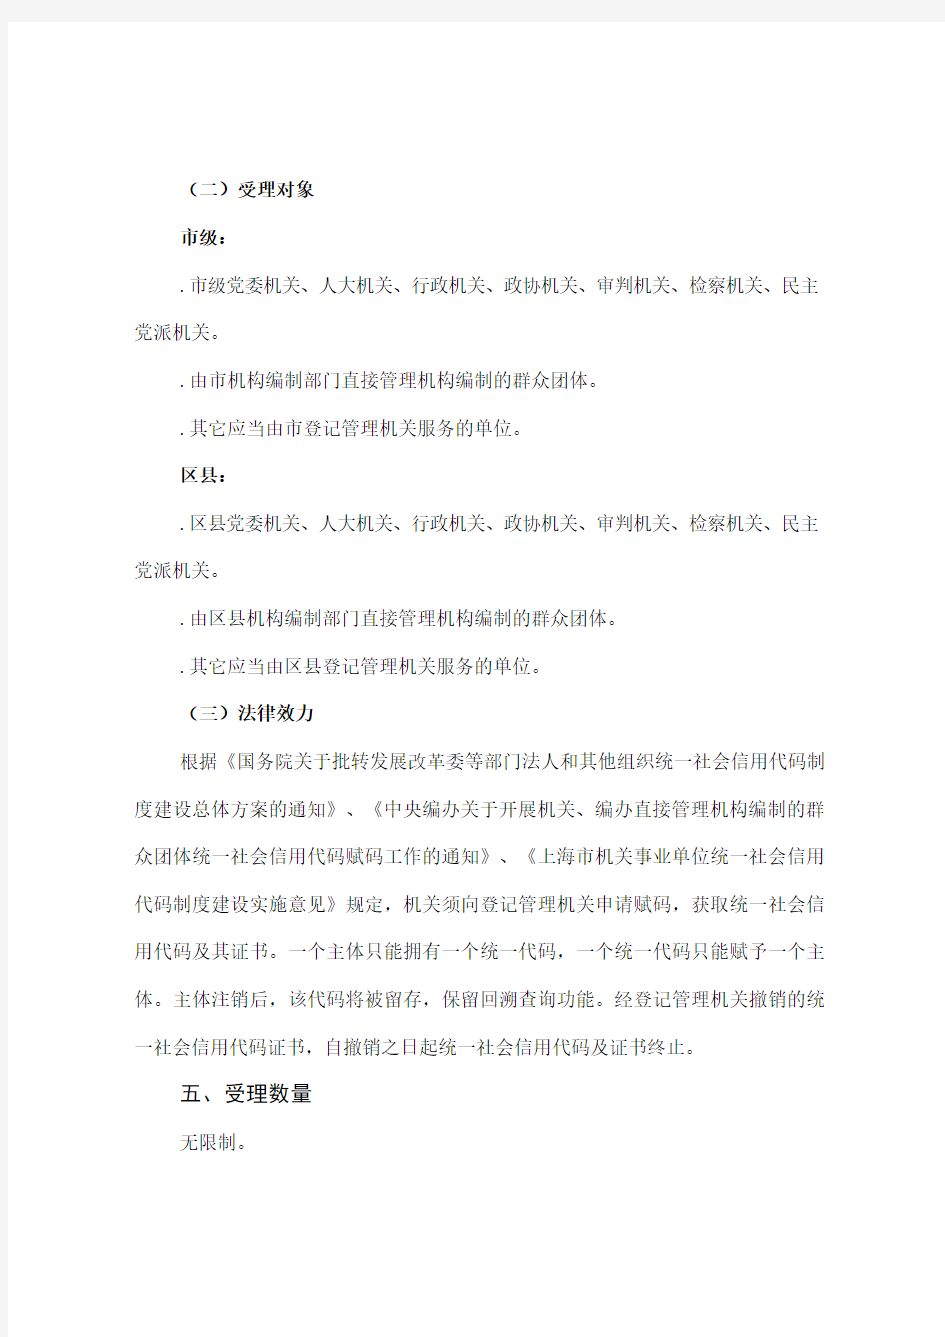 上海市机关统一社会信用代码证书服务指南